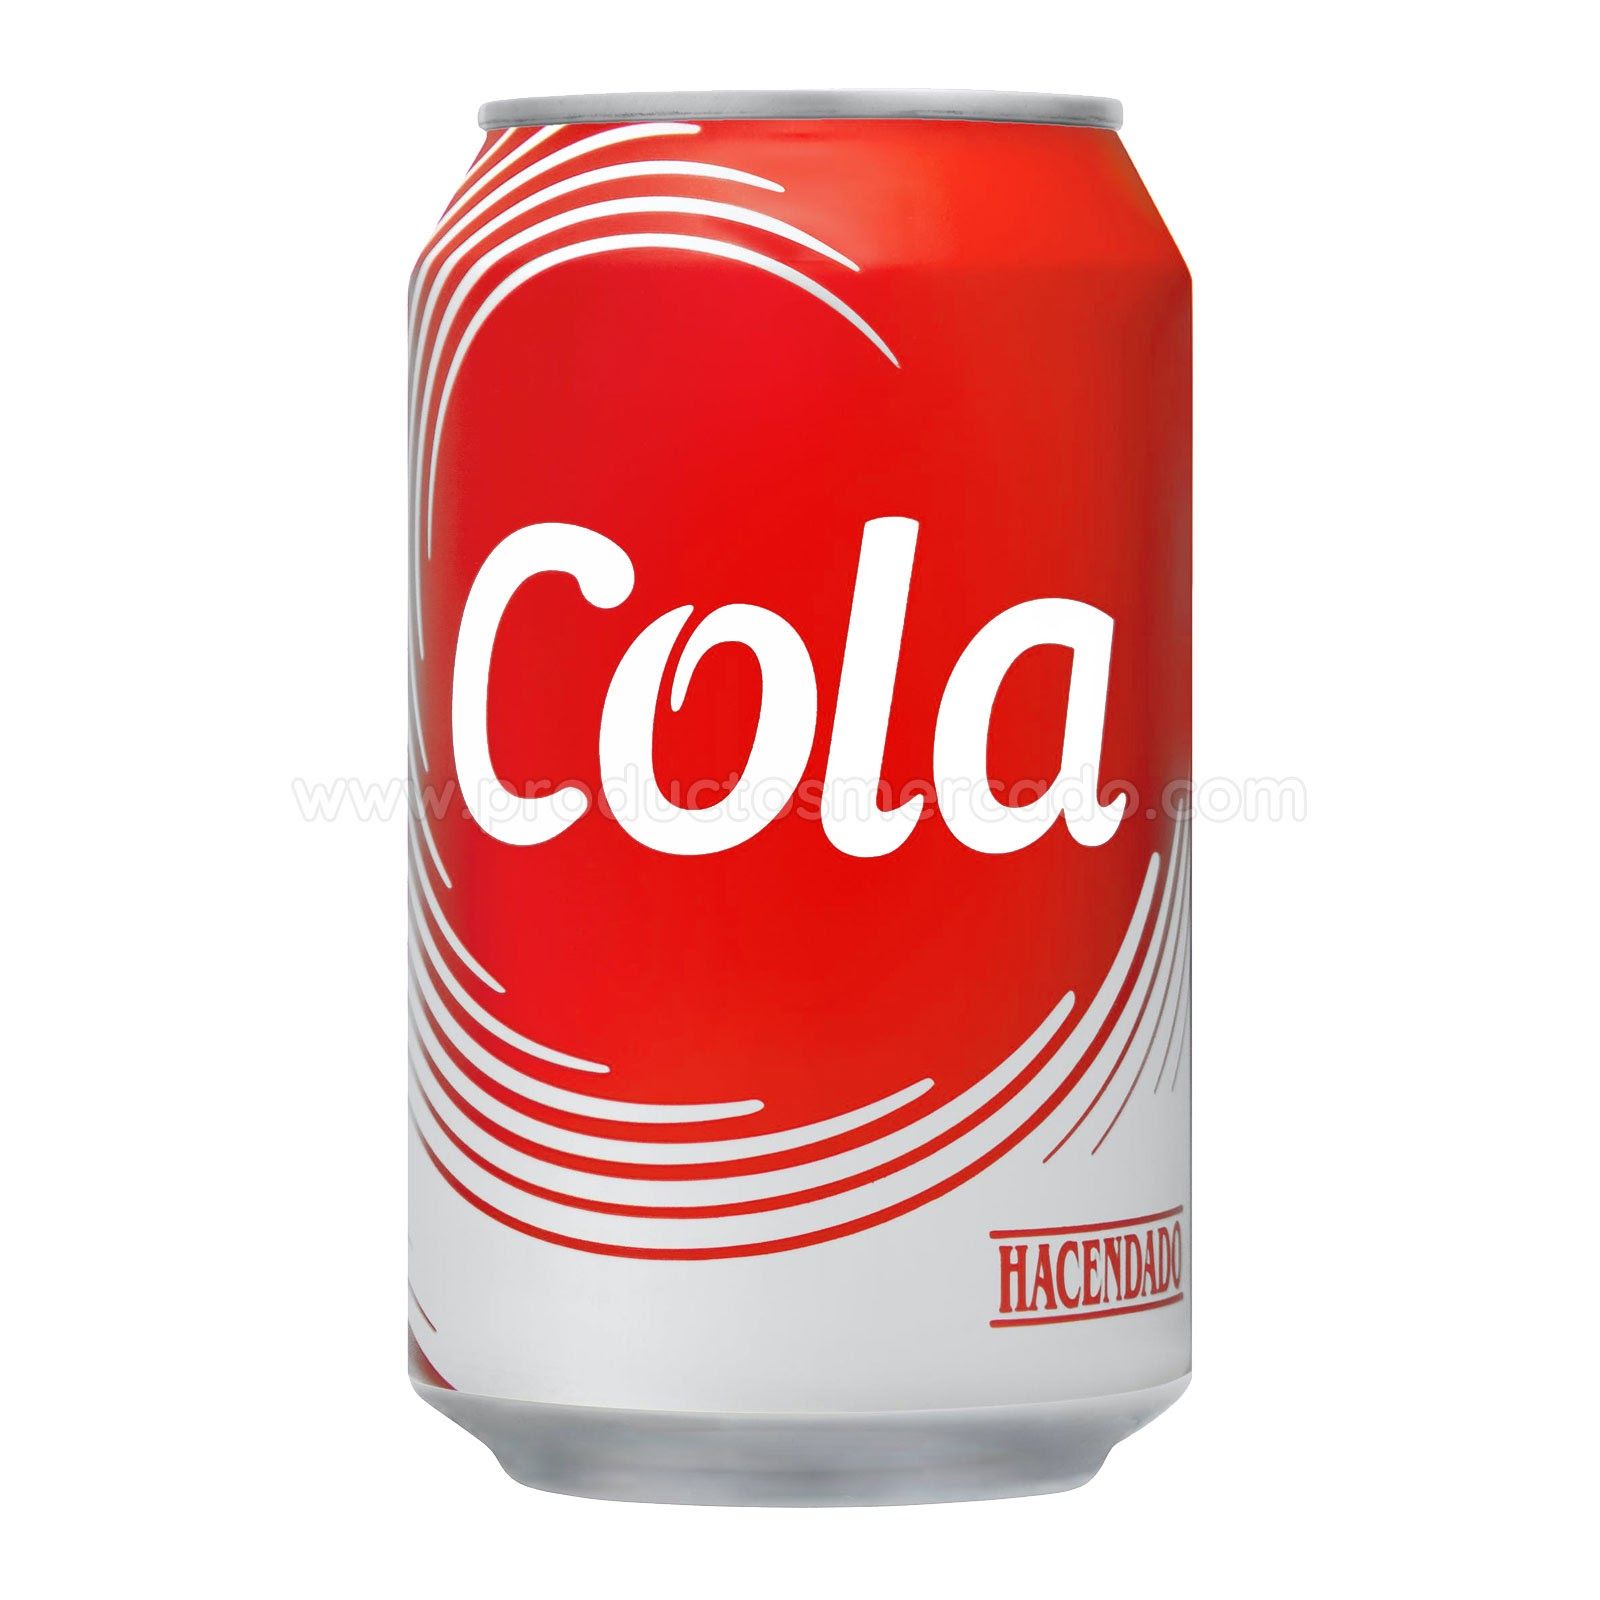 Mercadona, Lidl, DIA ¿qué refresco de marca blanca se parece más a Coca  Cola?